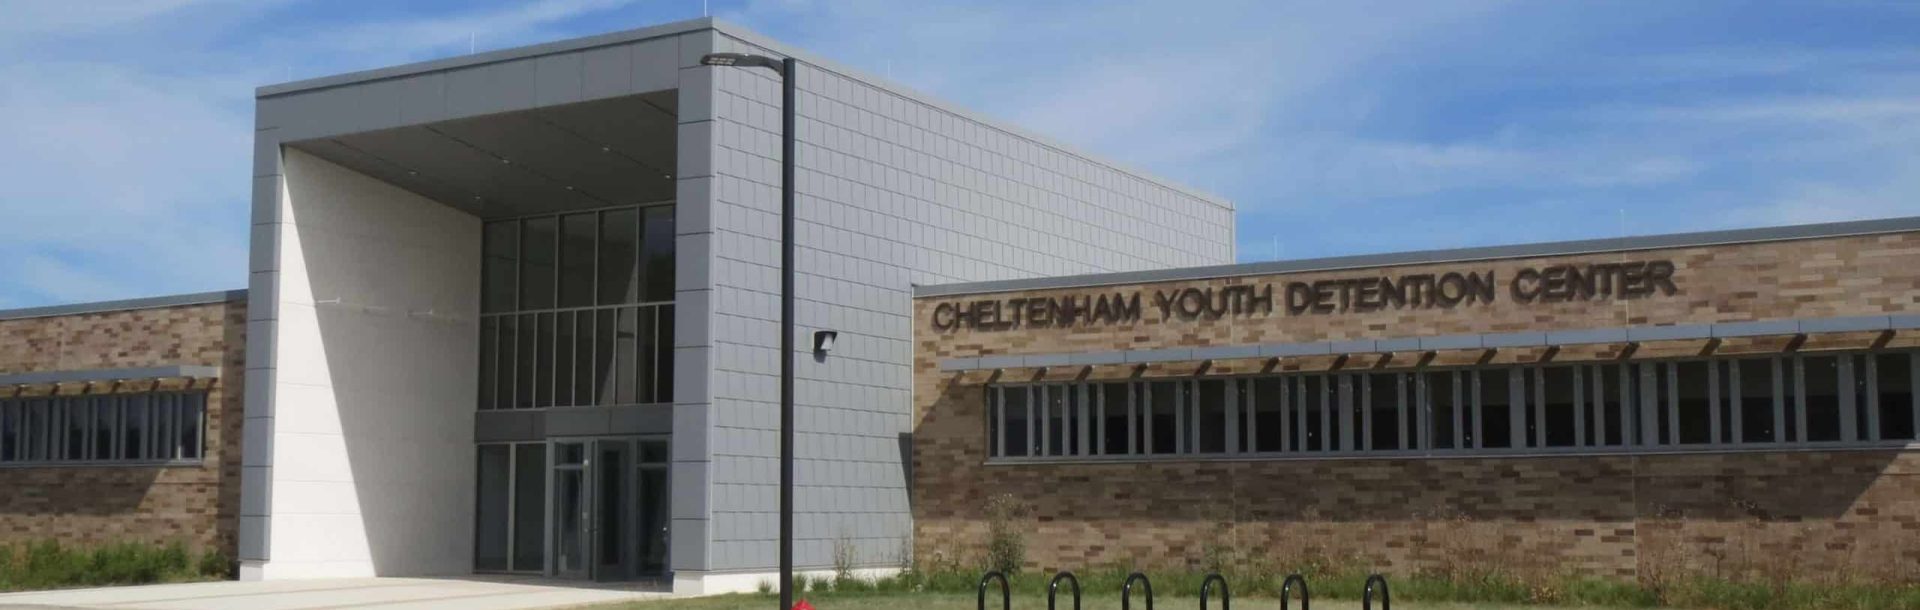 Cheltenham Youth Detention Center